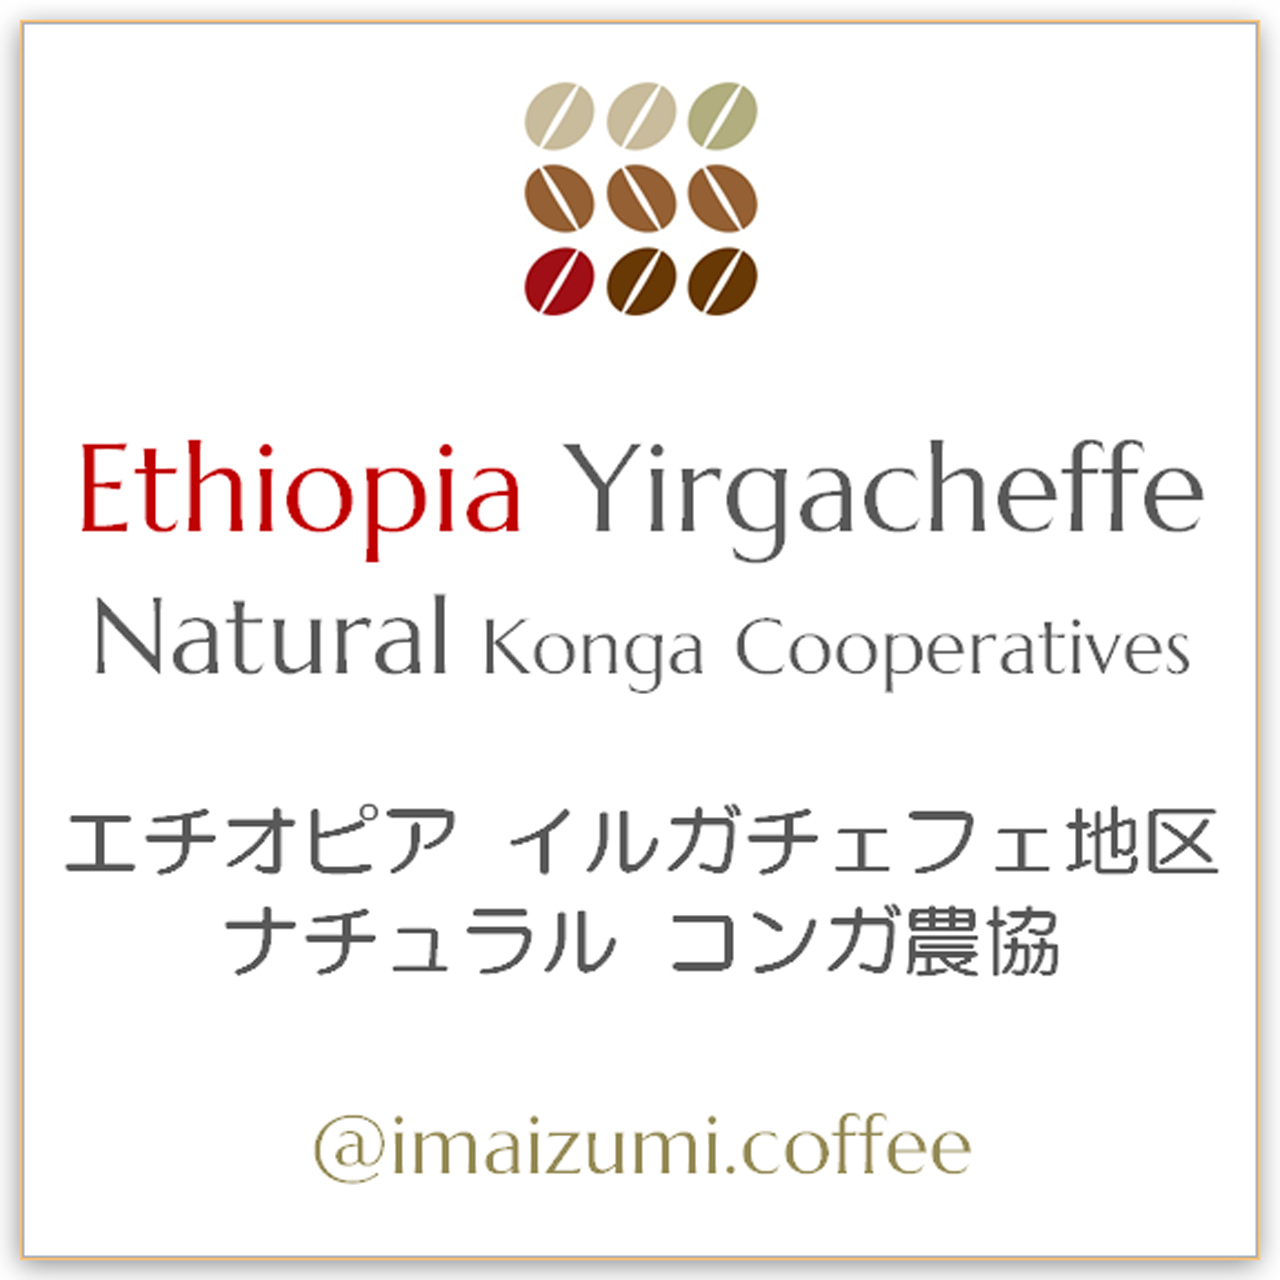 送料込 エチオピア イルガチェフェ地区 ナチュラル コンガ農協 Ethiopia Yirgacheffe Natural Konga Cooperatives 300g 100g 3 今和泉珈琲焙煎 Imaizumi Coffee スペシャルティコーヒー 自家焙煎